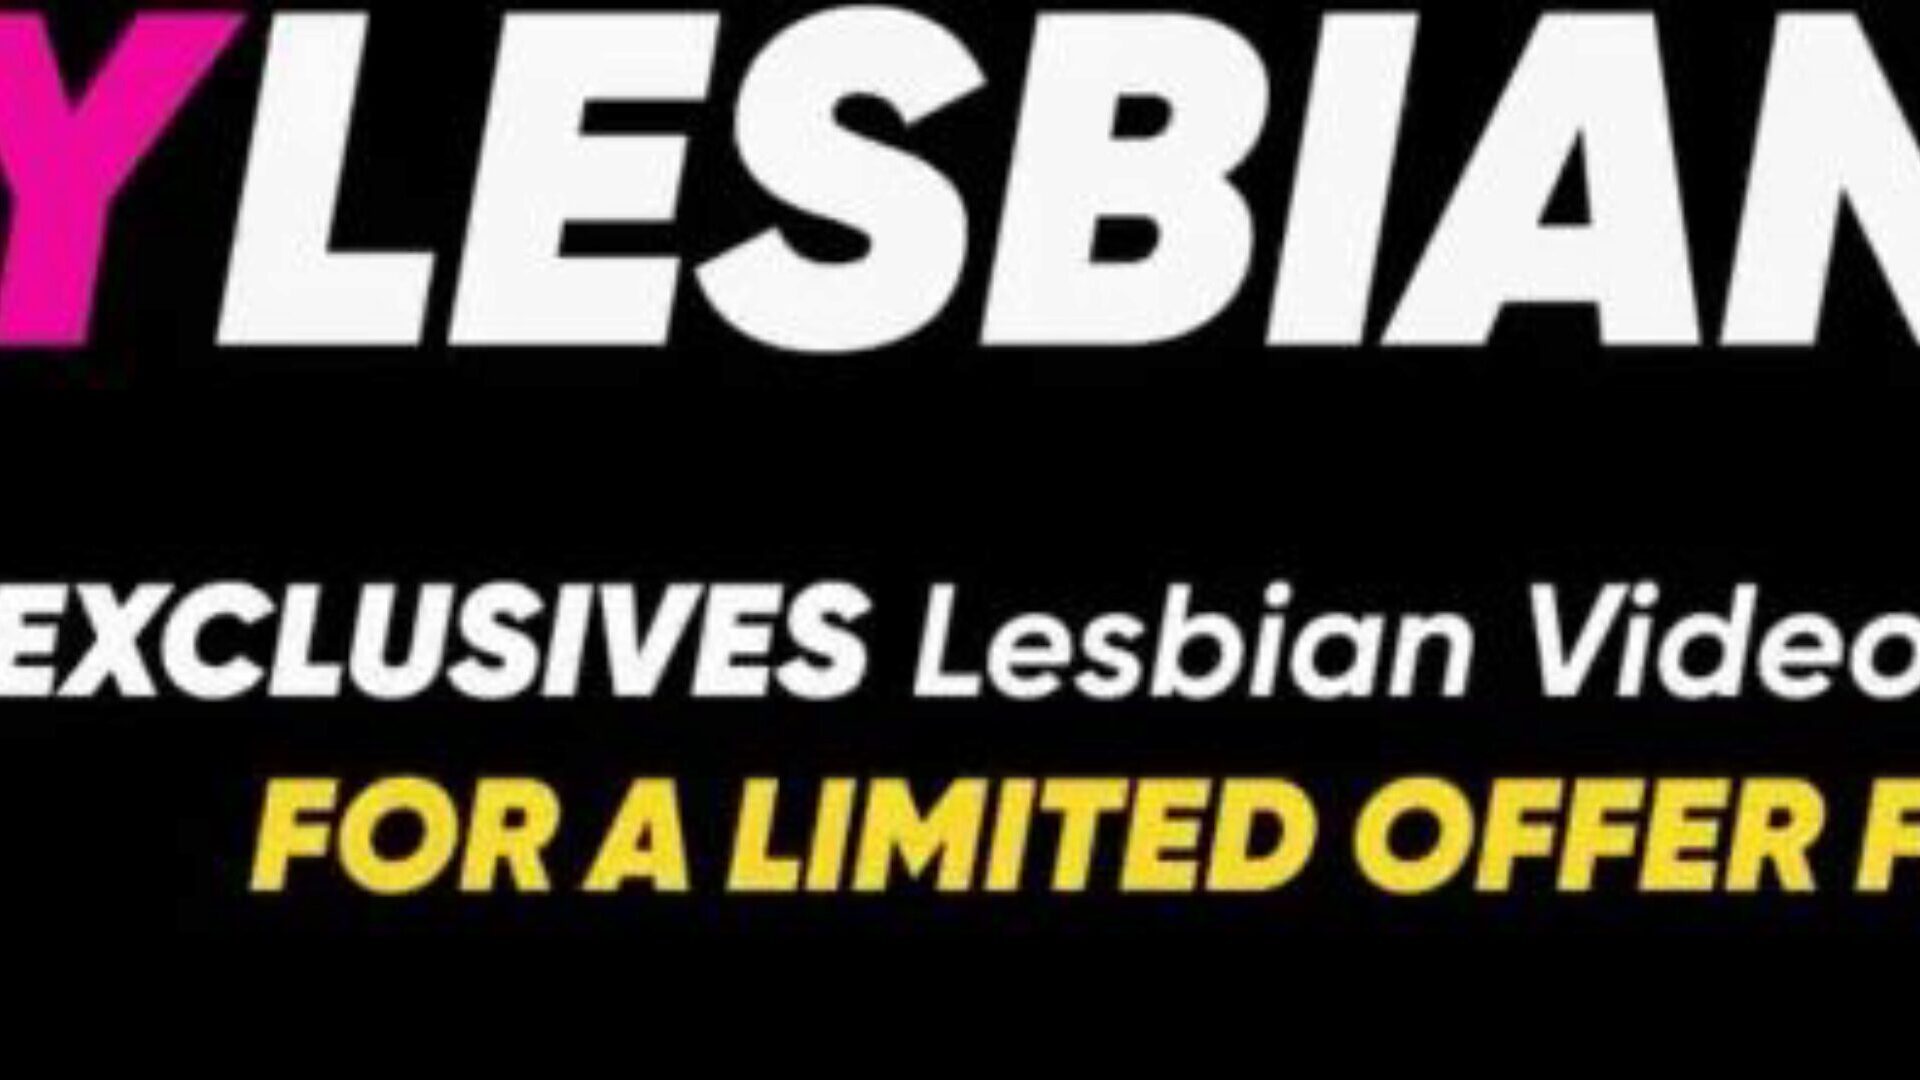 lesbický analingus s Riley Reid - musíte vidět, úžasné!